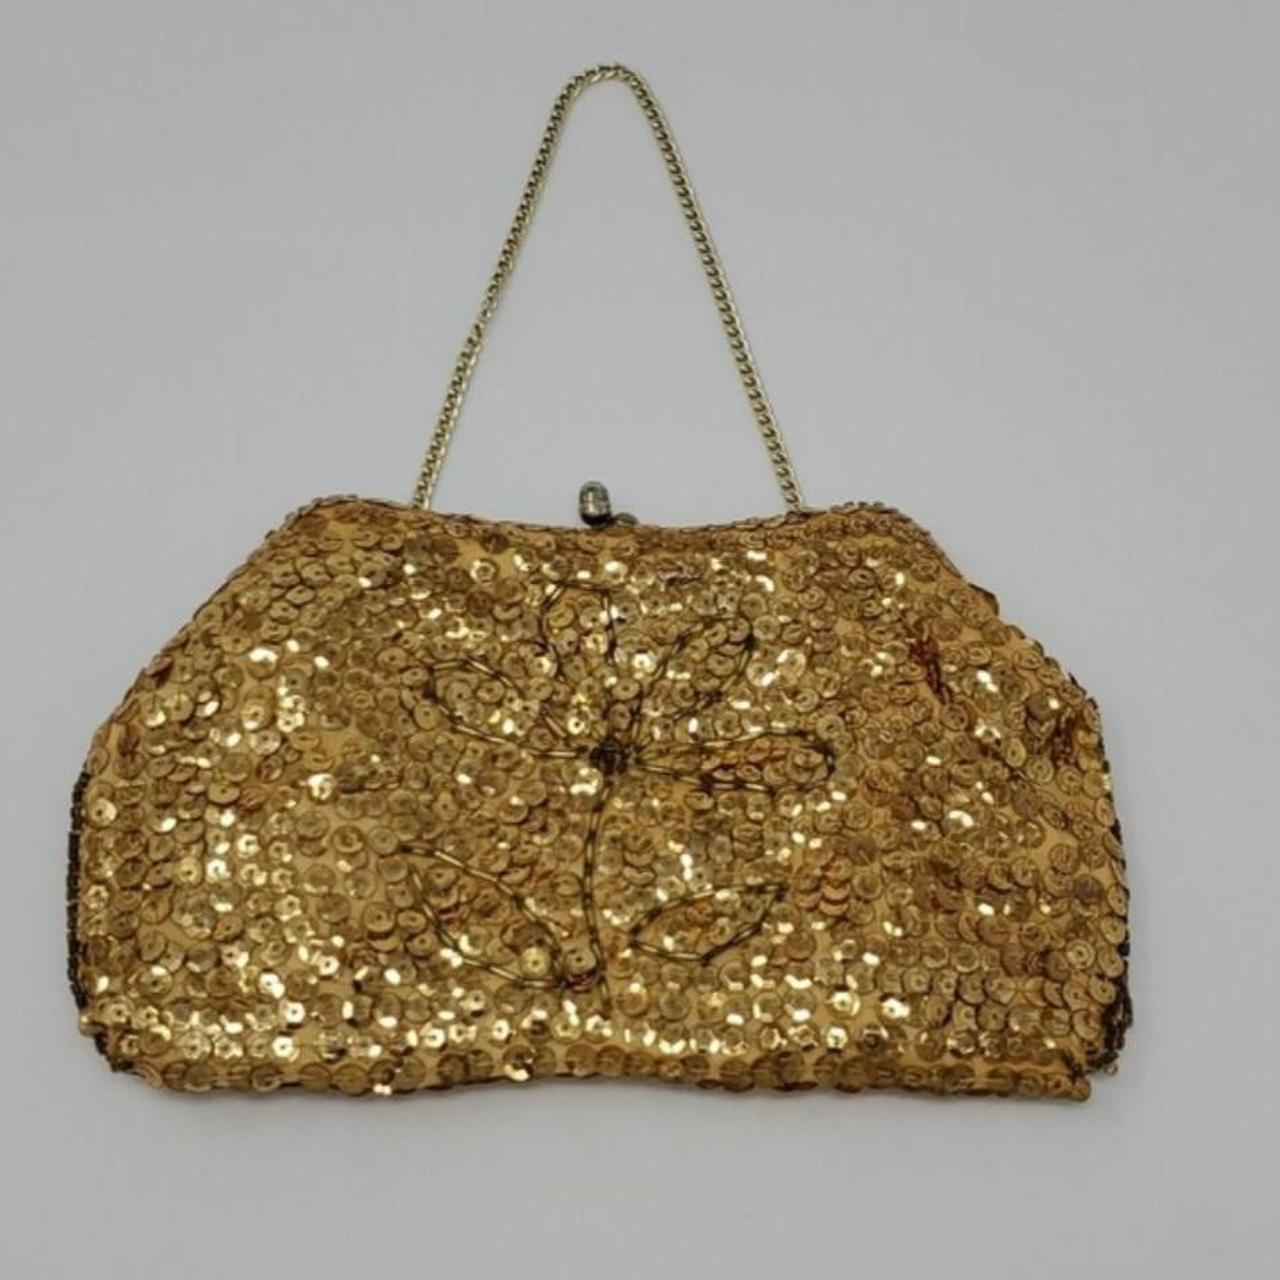 Vintage Handbag by La Regale, 1960's Clutch Evening Bag